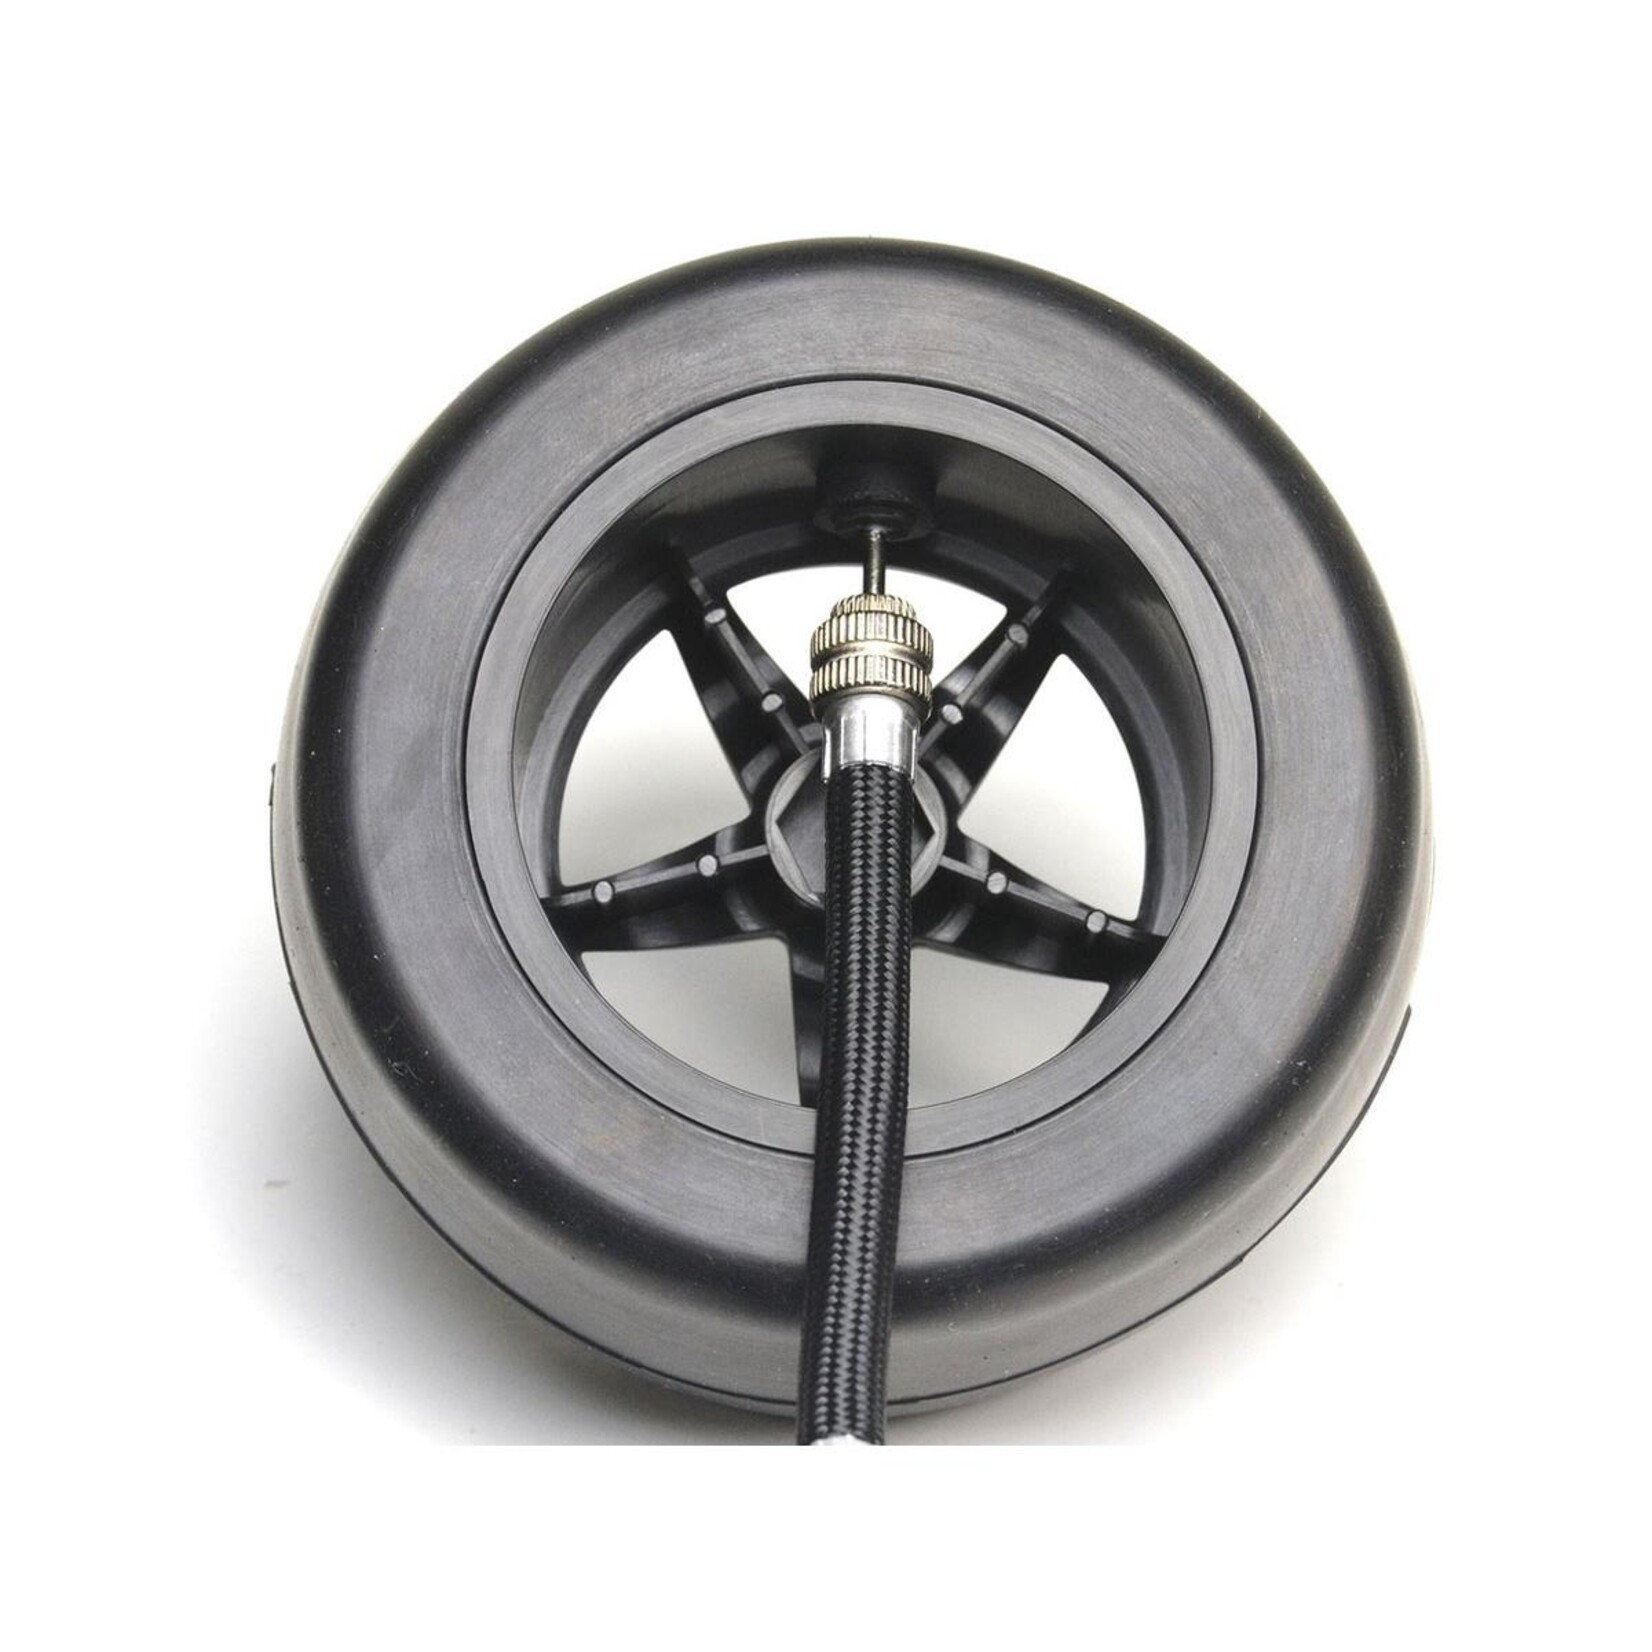 Exotek Exotek Twister Pro Belted Drag Tire & Wheel Set (2) #2090